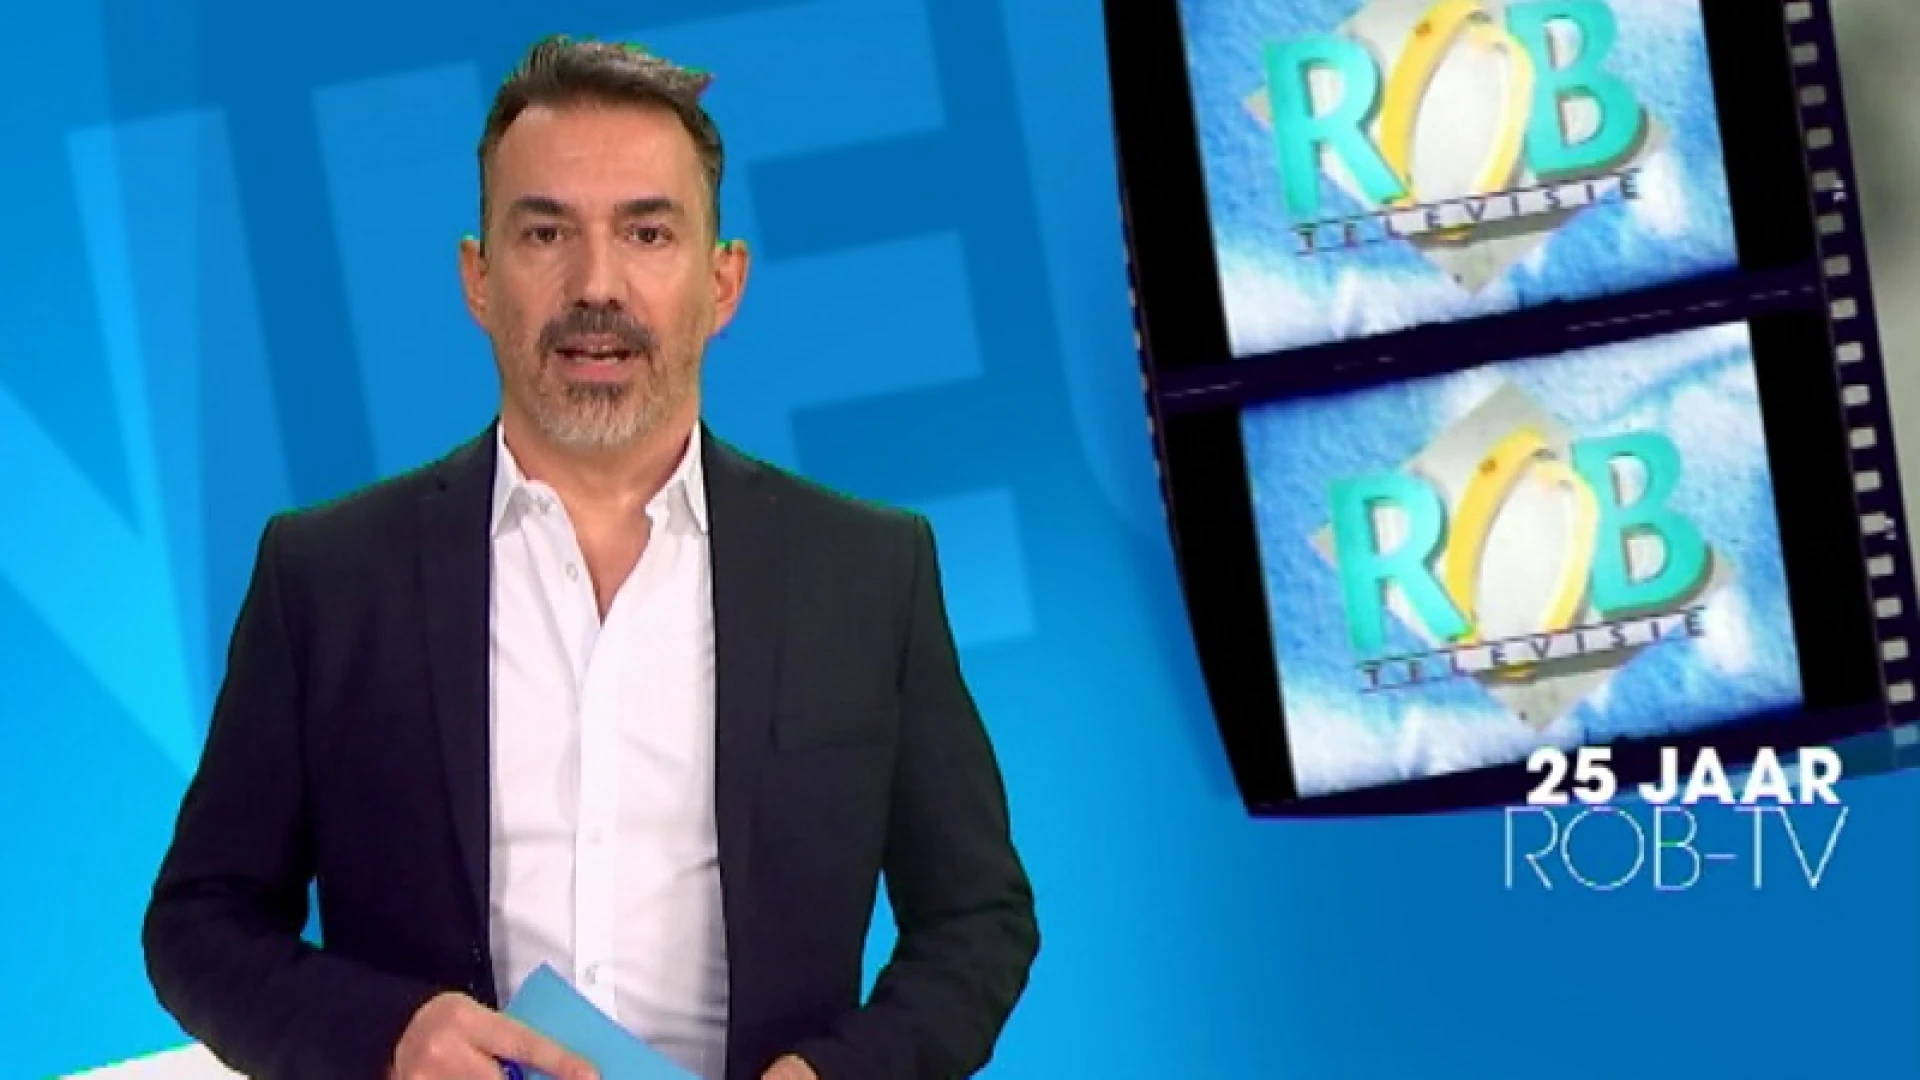 Kijktip 25 jaar ROB-tv: Van een piepjonge Ben Crabbé tot de mopjes van meneer André